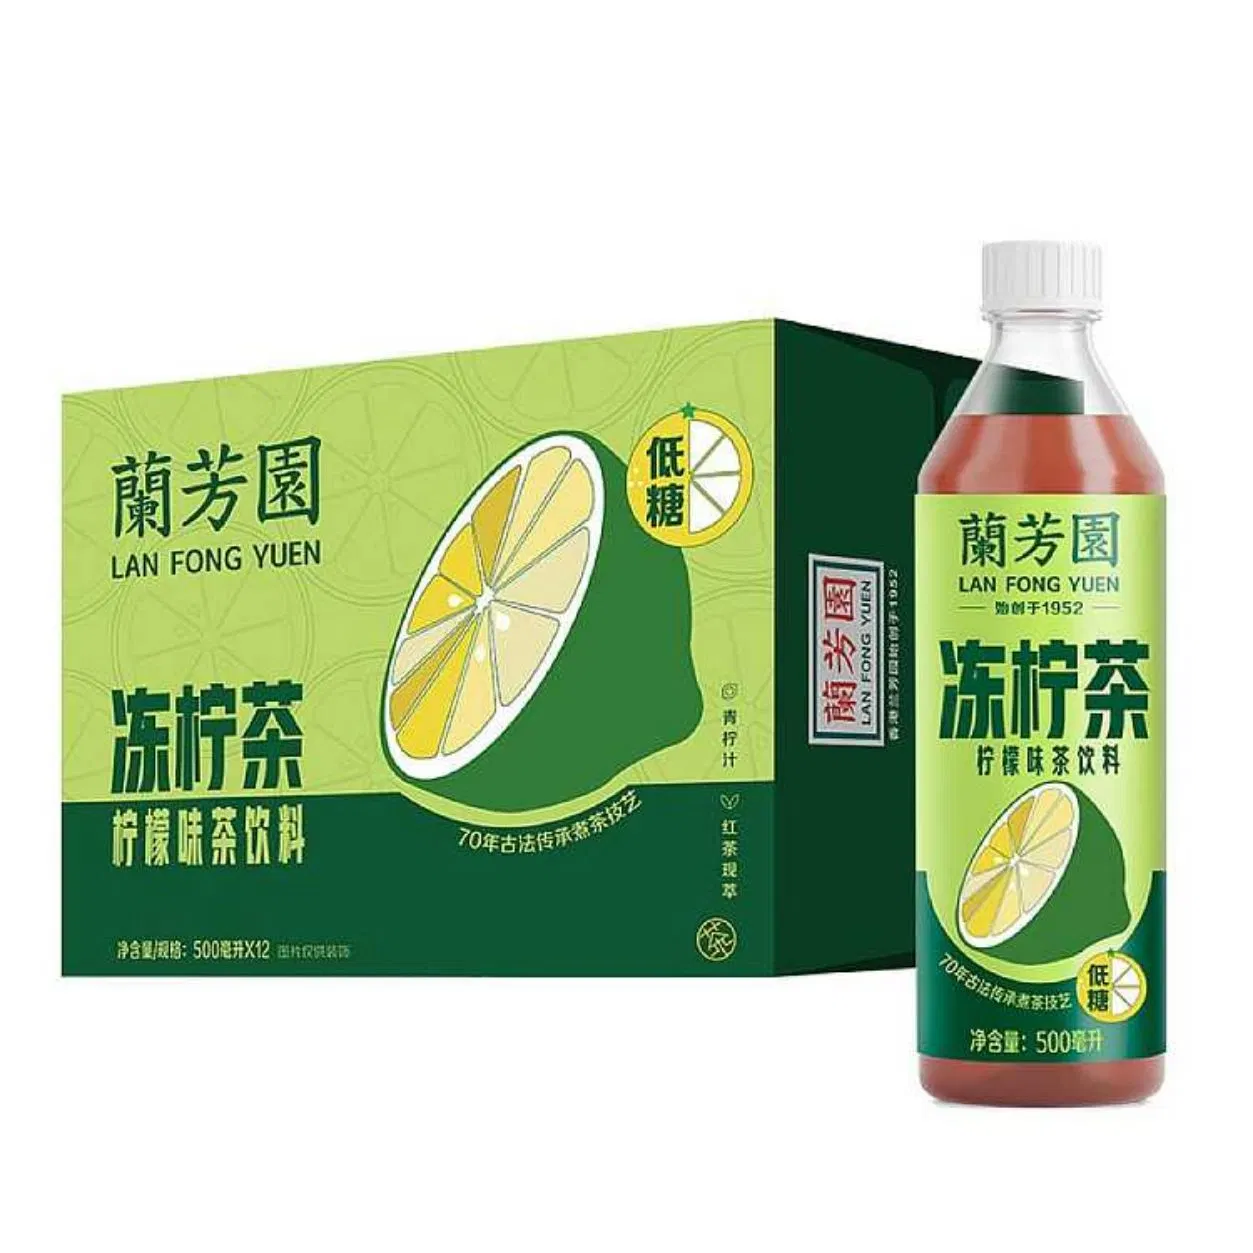 Chill com LAN Fong Yuen: Autêntico gelo limão Chá Bliss